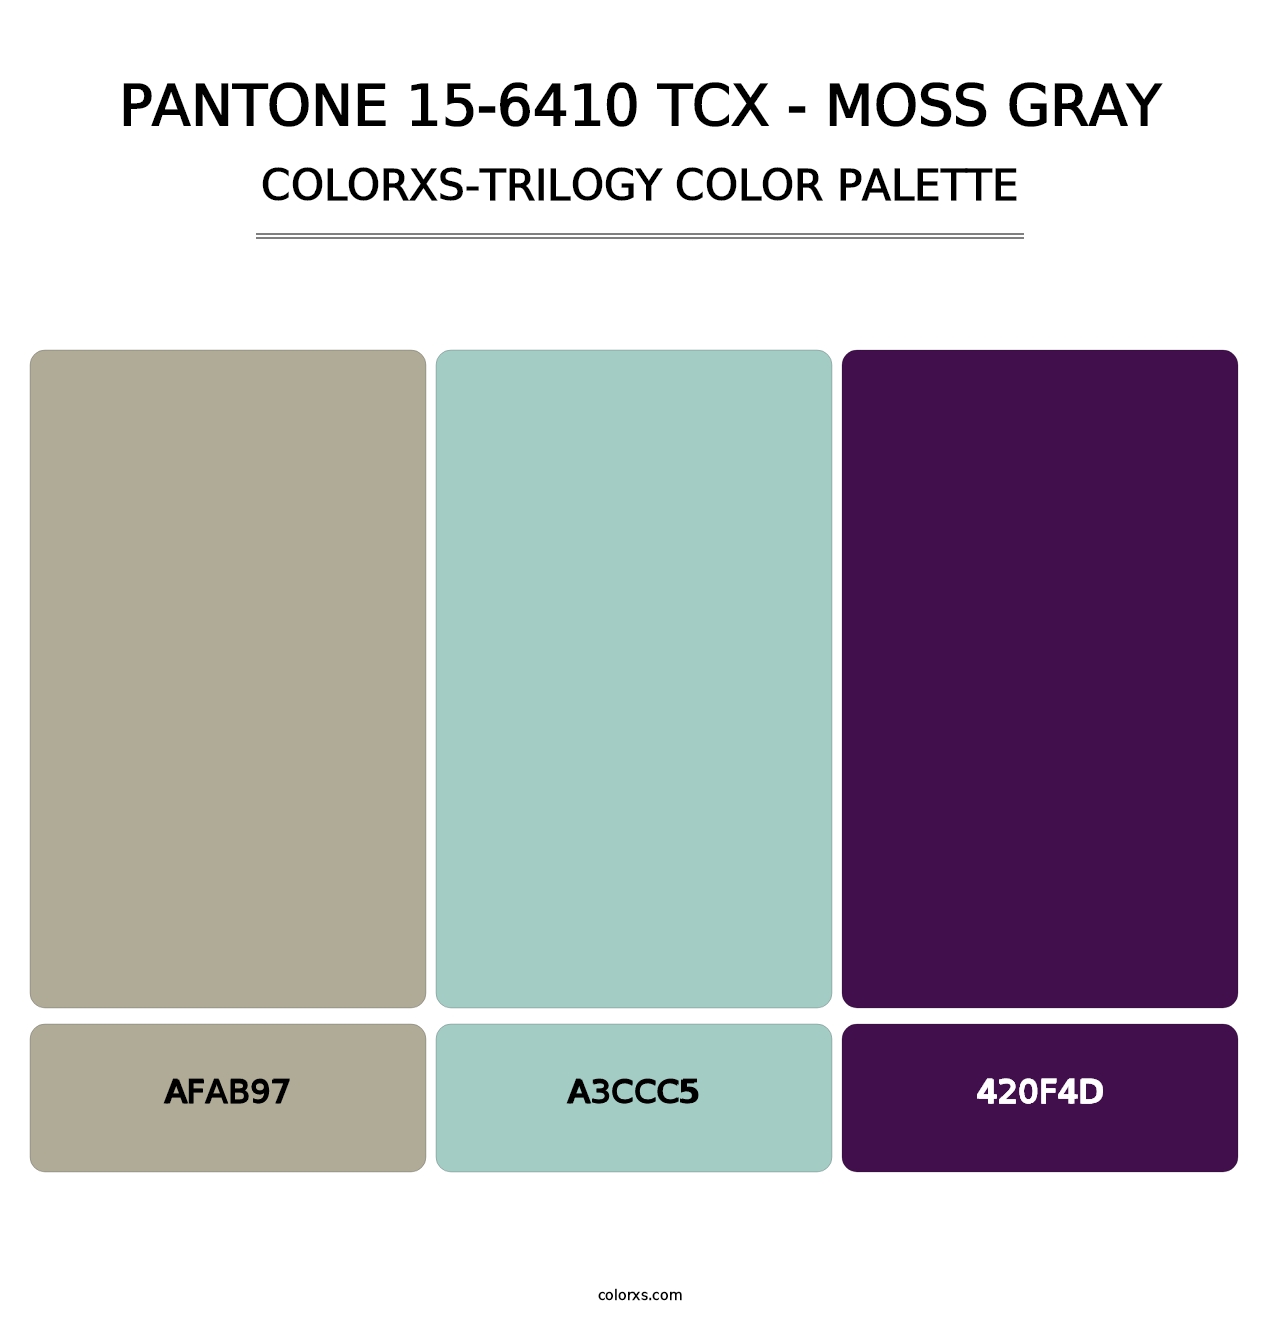 PANTONE 15-6410 TCX - Moss Gray - Colorxs Trilogy Palette